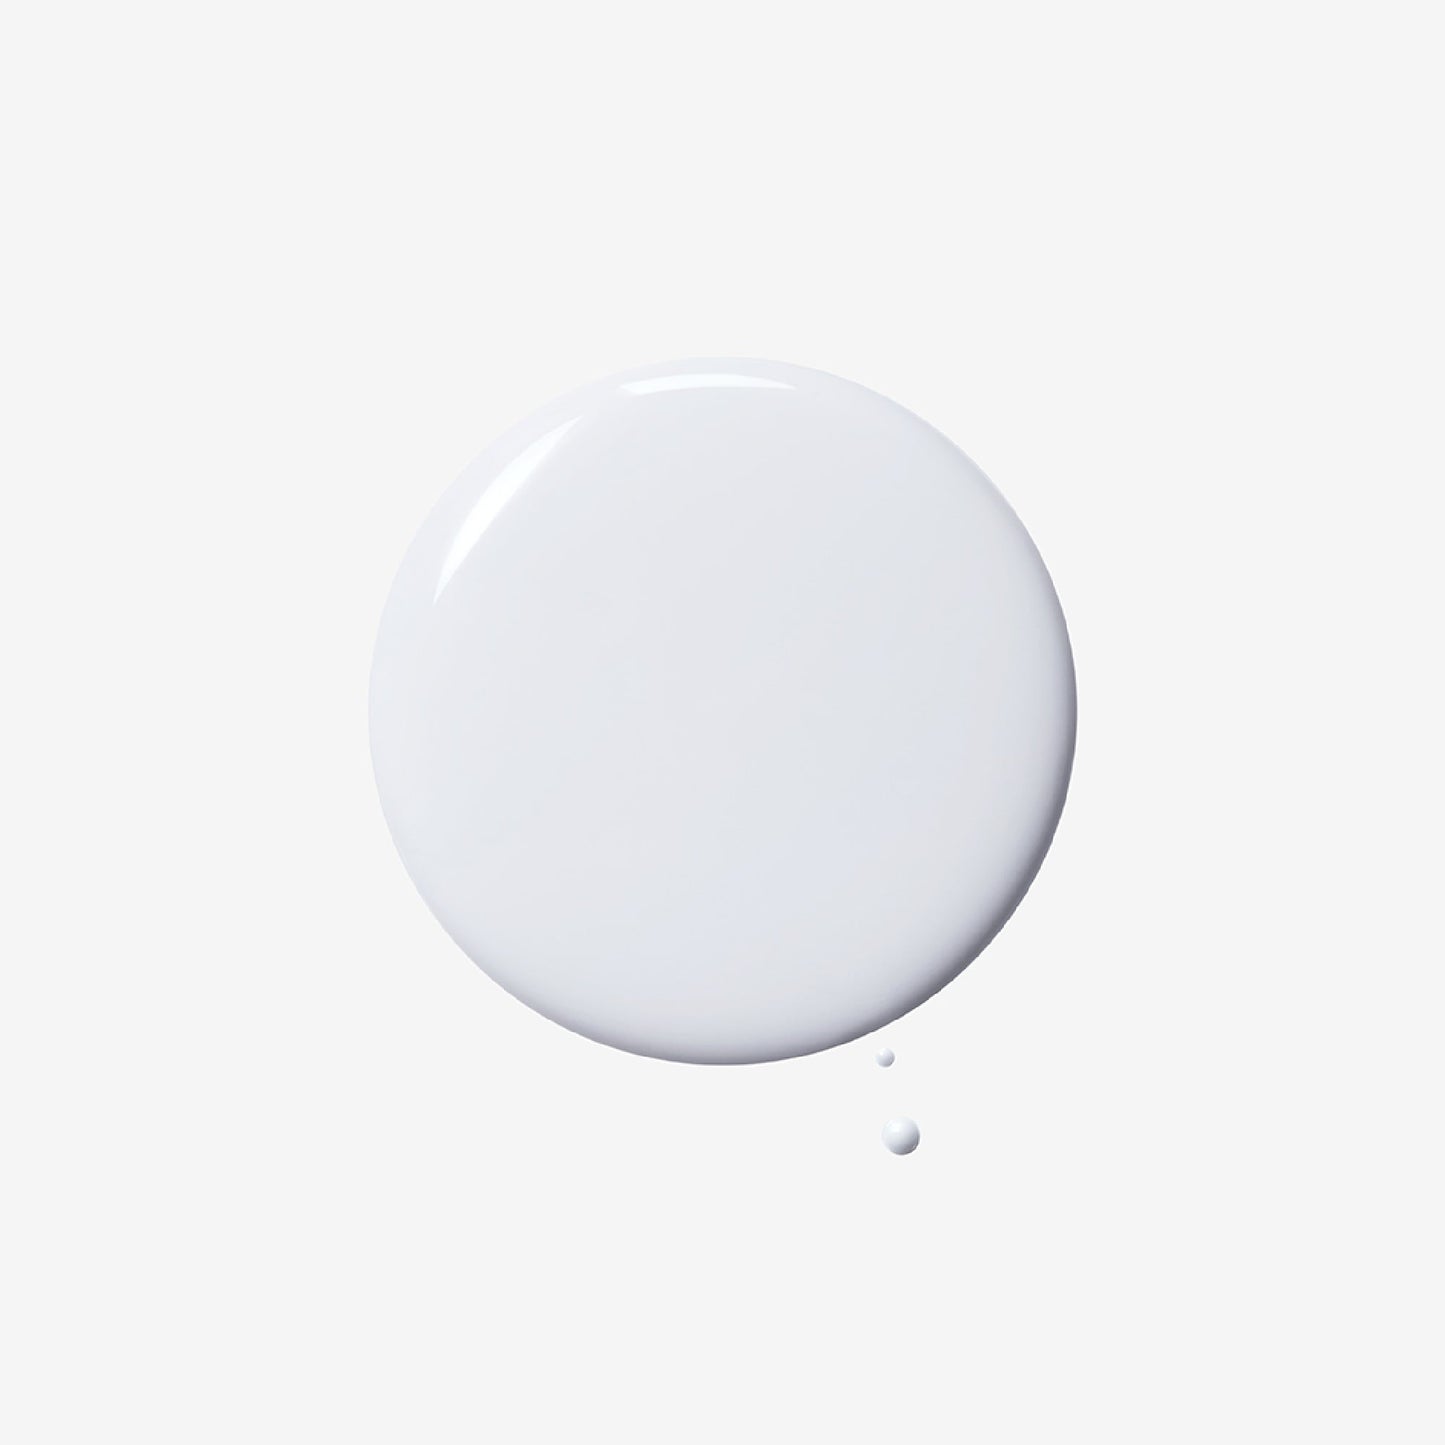 Phyto Nature Oxygen Cream auf weißem Hintergrund, die das Konzept der „Hautalterung“ betont.